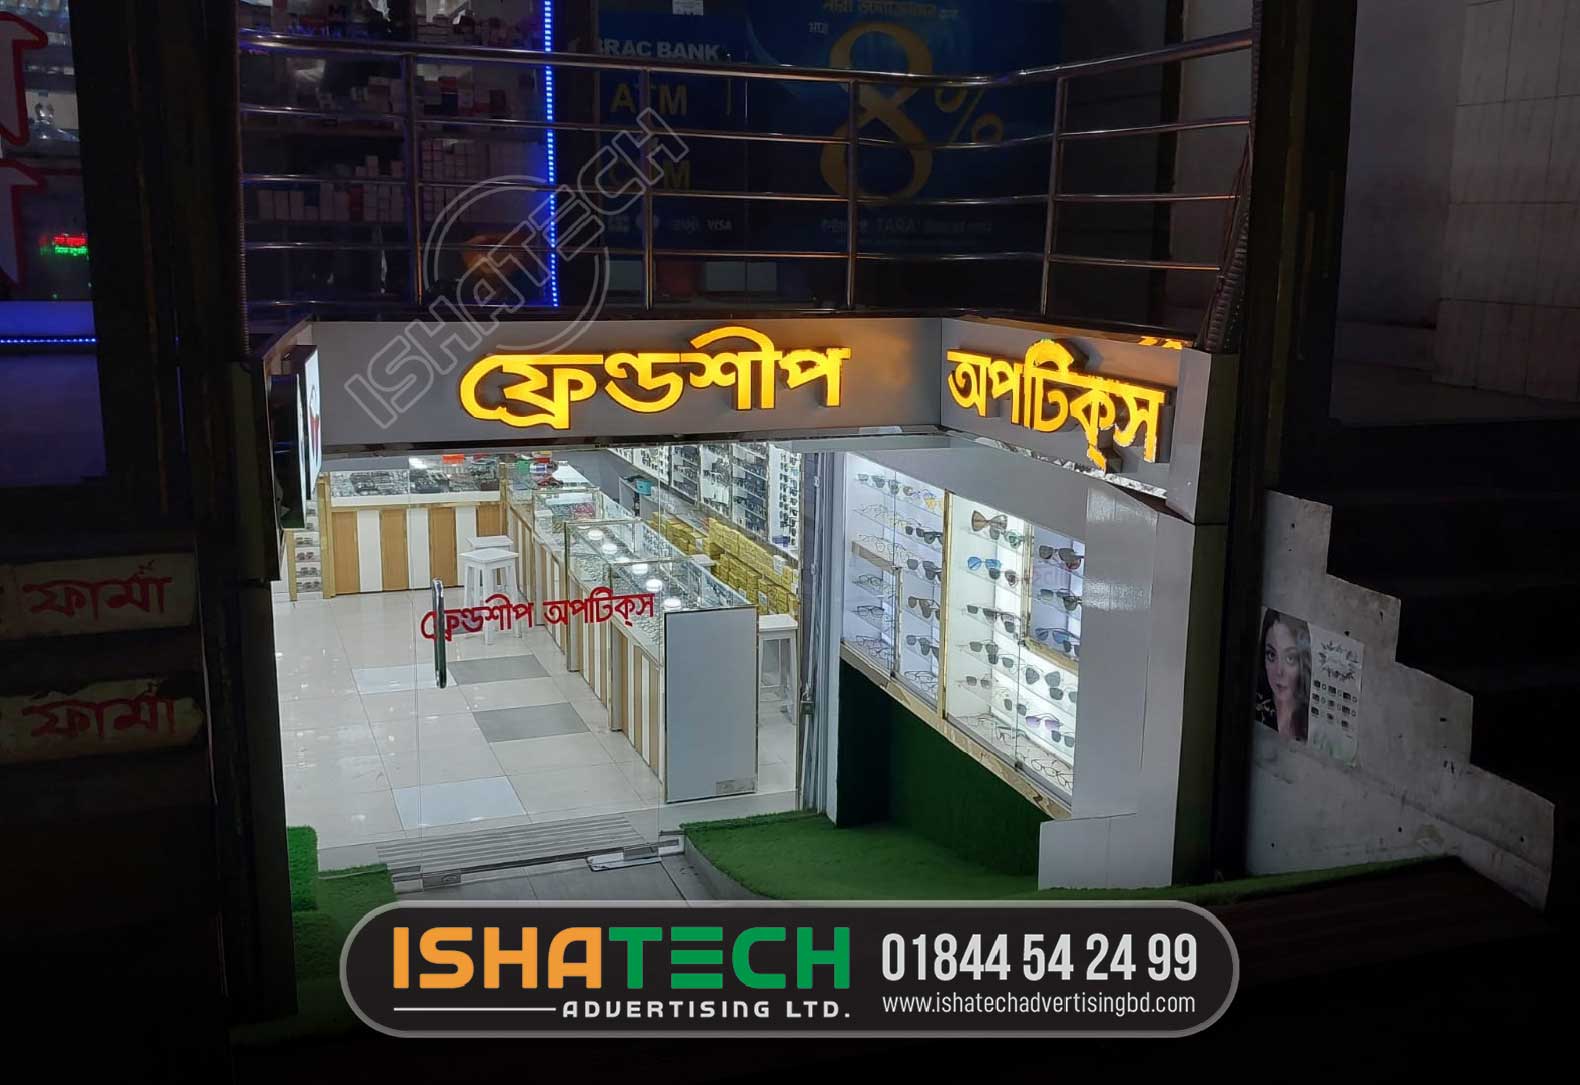 SUNGLASS SHOP ACRYLIC 3D LETTER SIGNAGE, LIGHTING ACRYLIC 3D LETTER FOR SUNGLASS SHOP IN DHAKA BANGLADESH